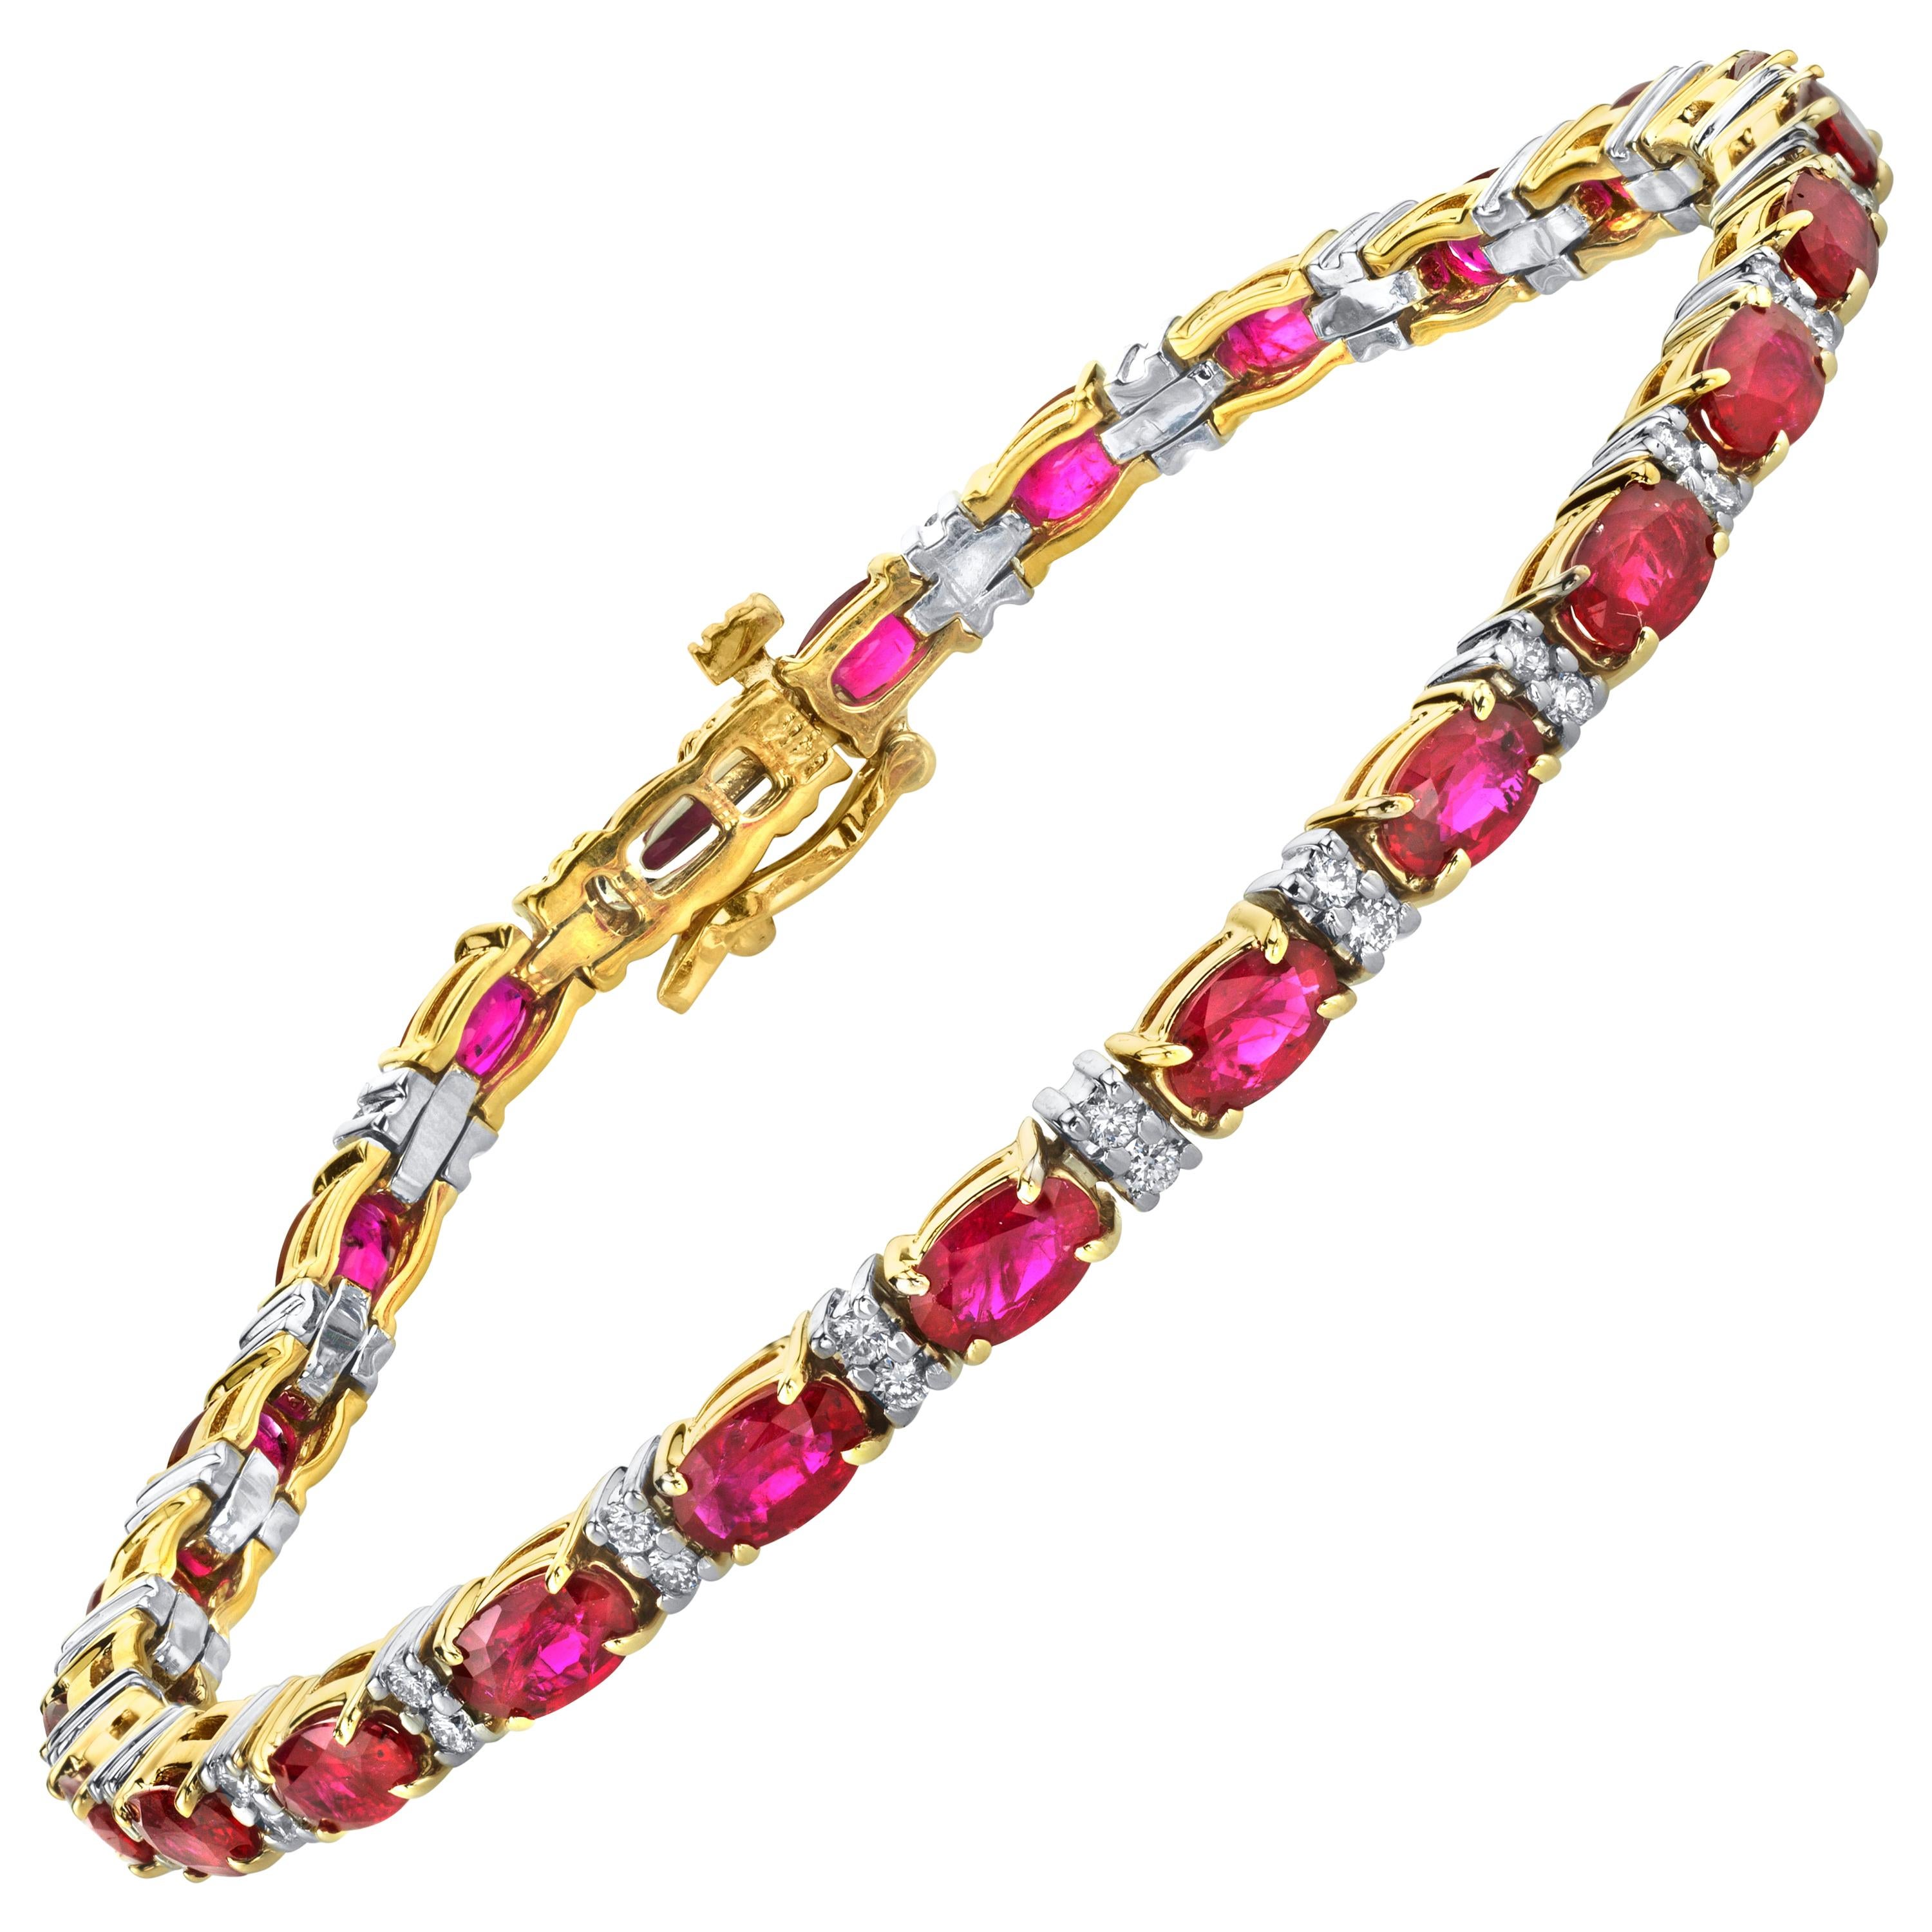 Ce superbe bracelet tennis en rubis et diamants présente plus de 6 carats de rubis brillants et vibrants associés à un demi-carat de diamants taille brillant ! Vingt-quatre rubis succulents sont sertis dans de l'or jaune 14k, alternant avec des